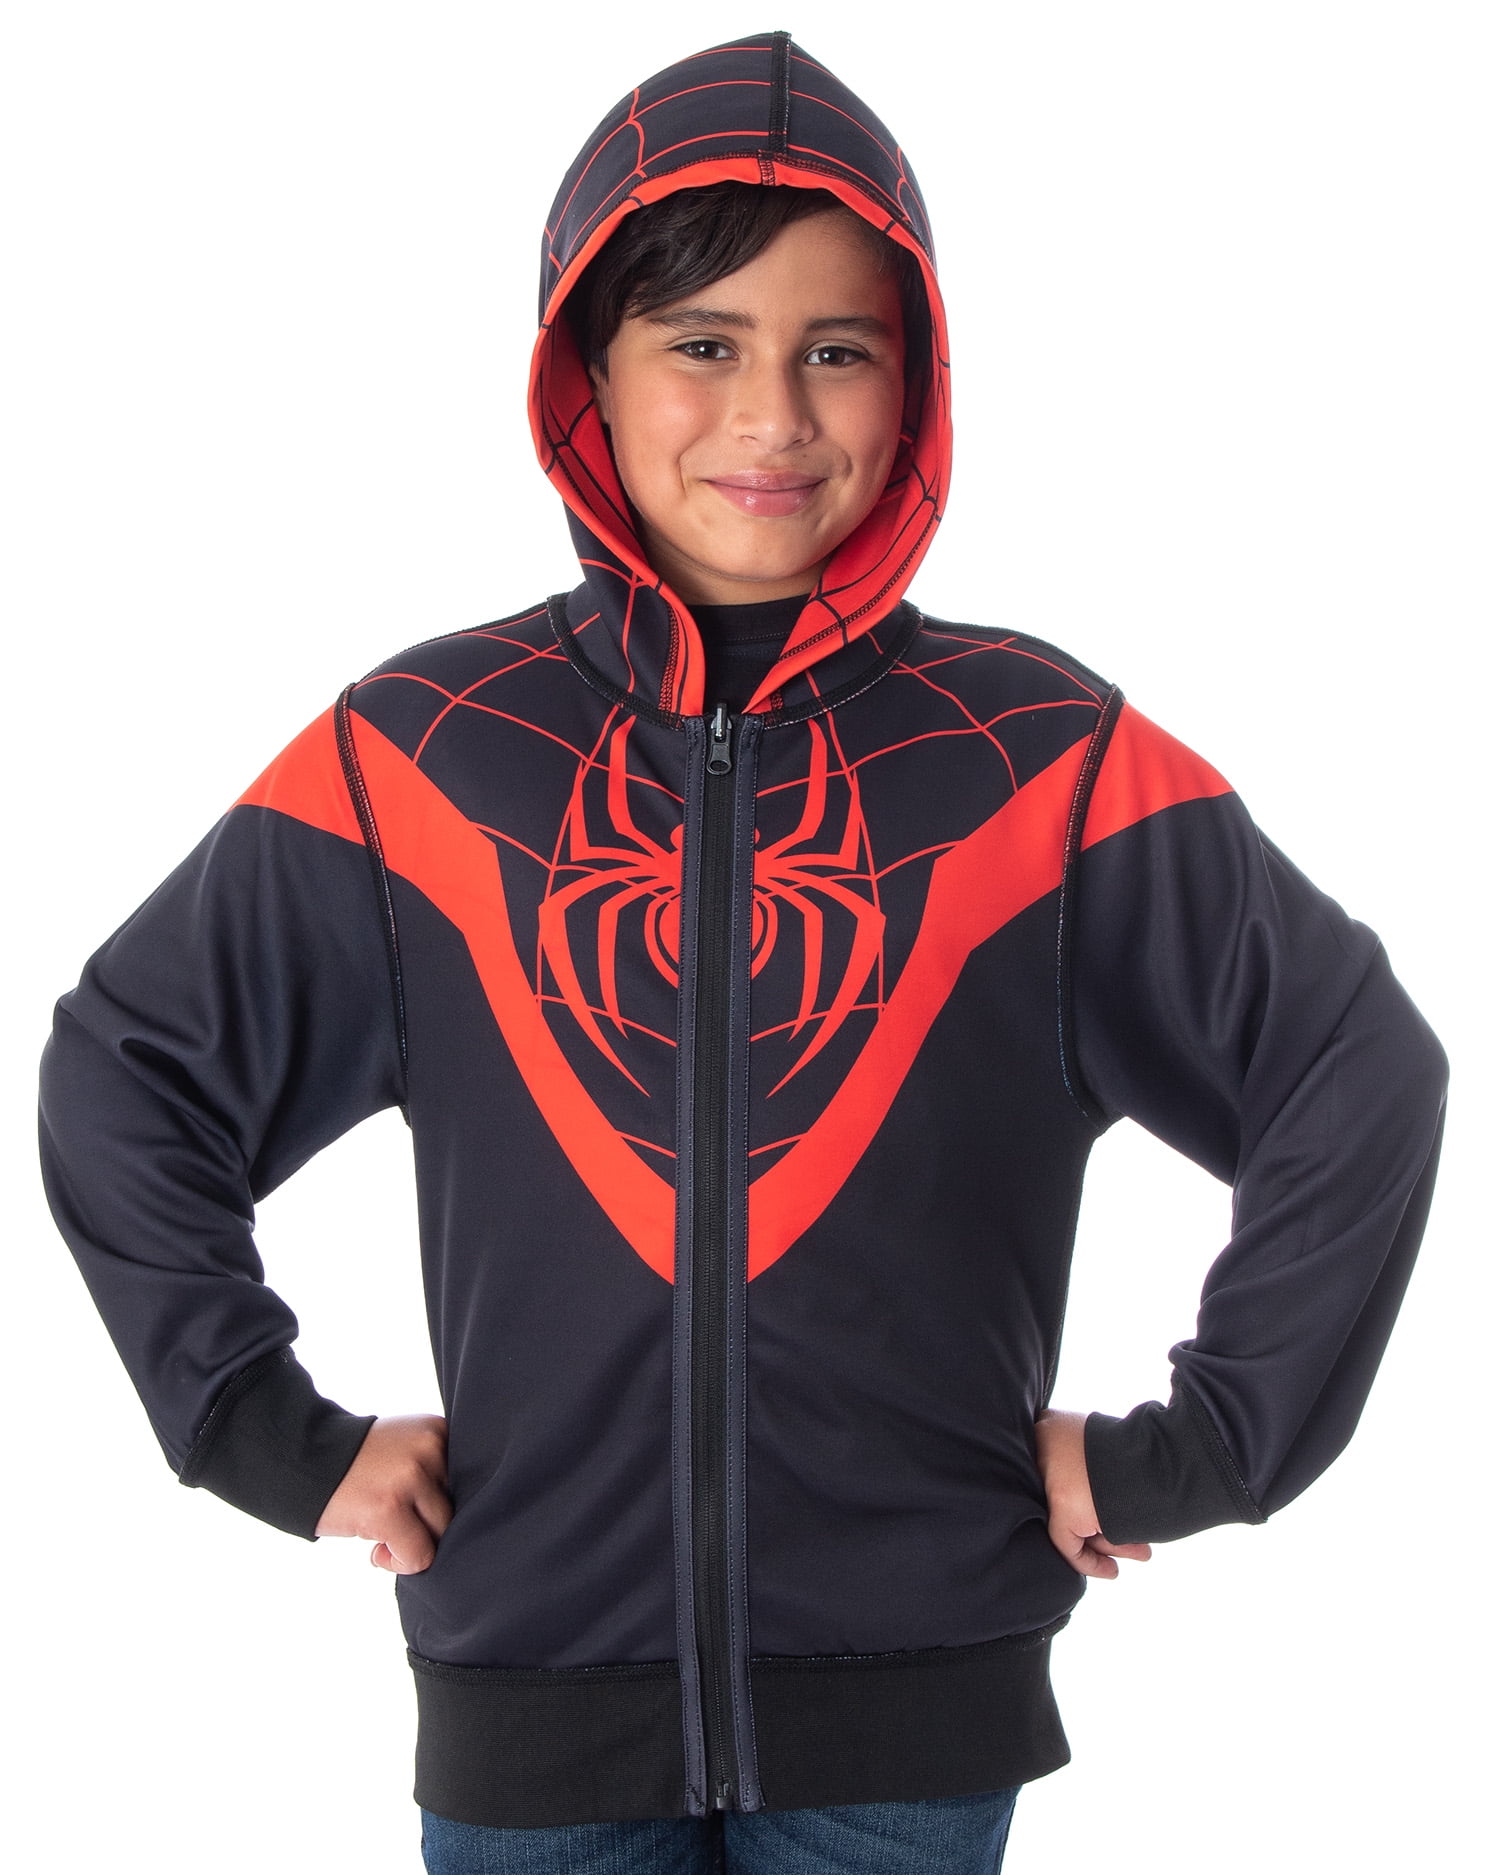 Miles Morales Kid's Hoodie Spider-Man Costume Pullover Jacket Printed Sweatshirt 